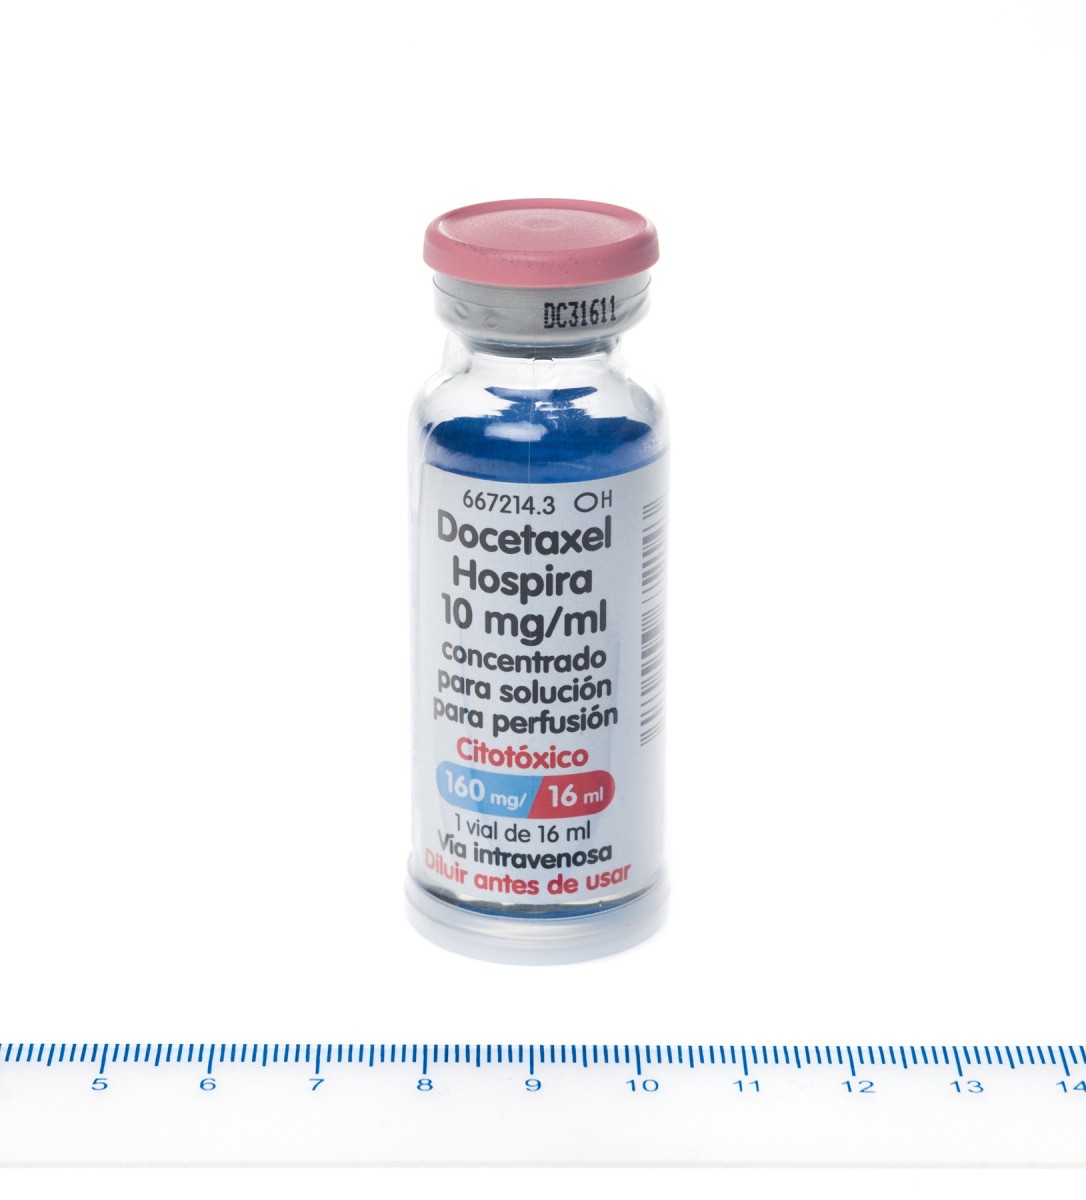 DOCETAXEL HOSPIRA 10 mg/ml CONCENTRADO PARA SOLUCION PARA PERFUSION, 1 vial de 16 ml fotografía de la forma farmacéutica.